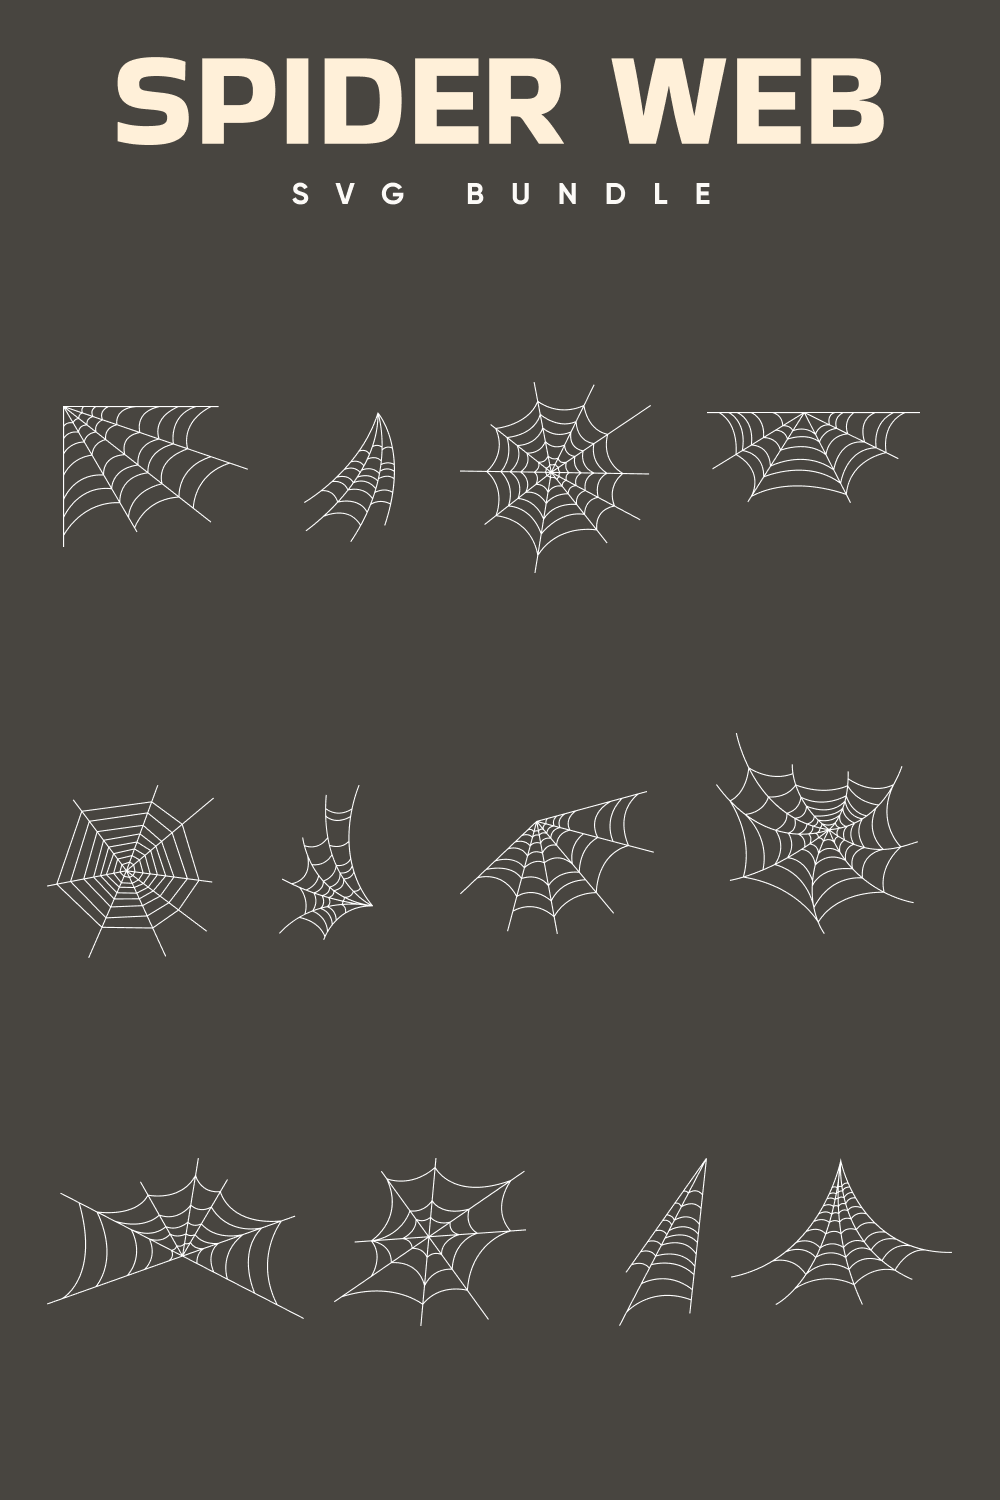 Cool spider web set.